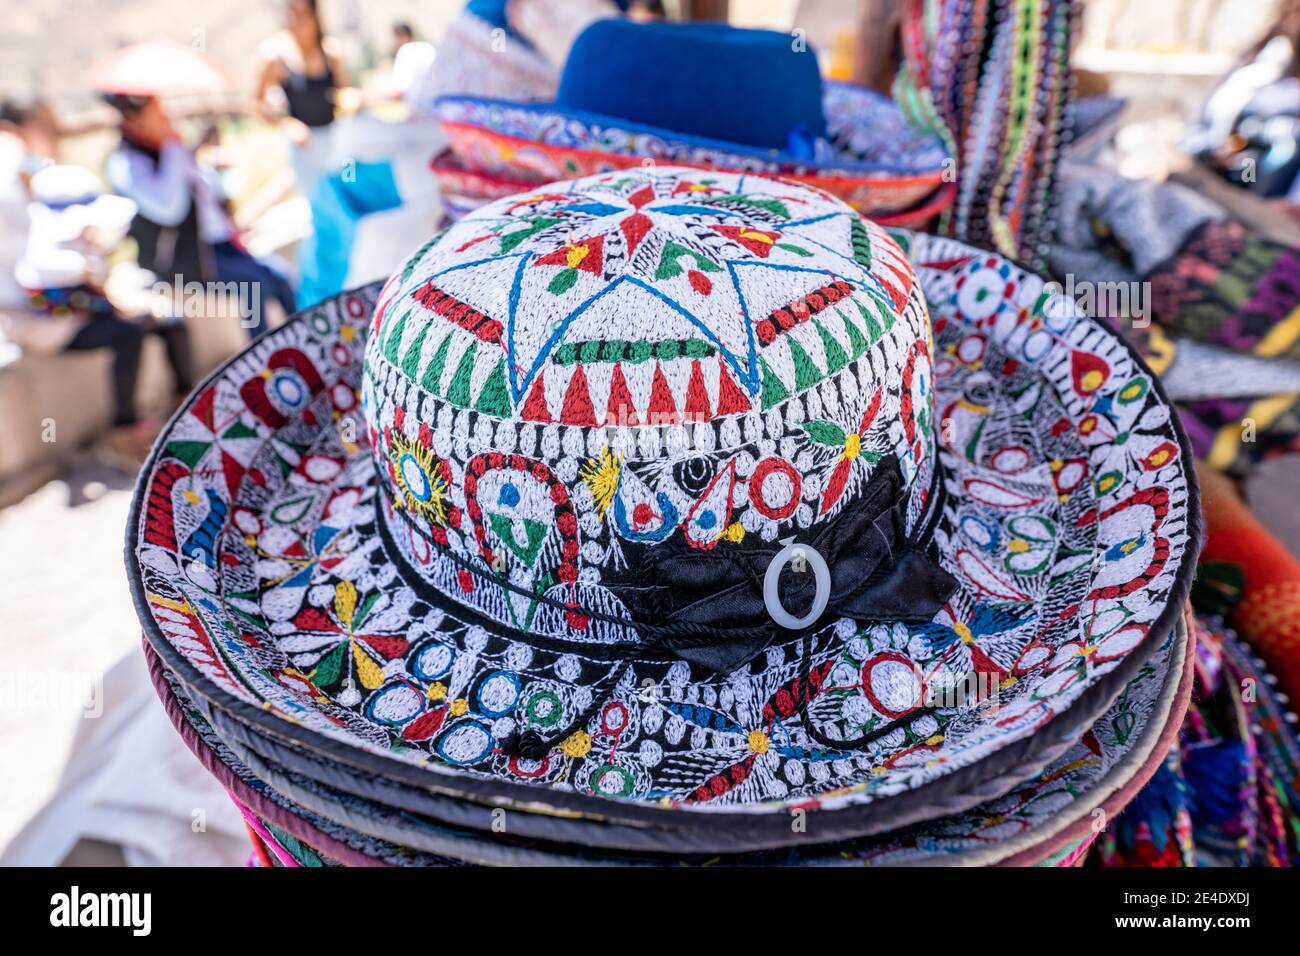 Traditionelle peruanische Hüte werden von Händlern auf dem Weg verkauft Zum  Condor Canyon Stockfotografie - Alamy